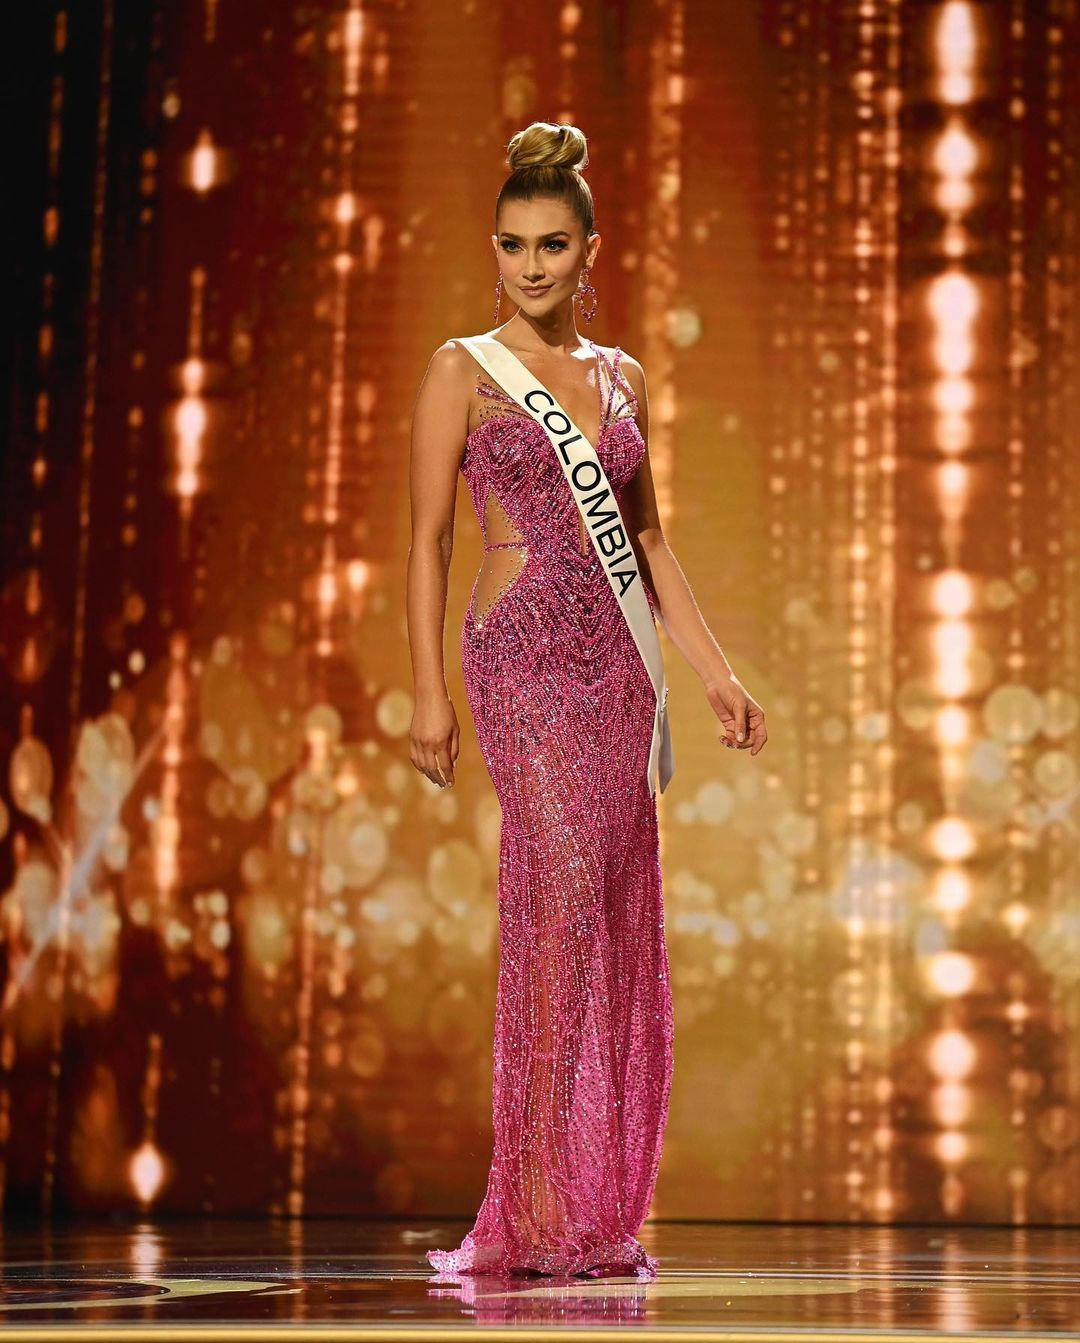 La historia detrás del vestido de gala que María Fernanda Aristizábal lució  en la preliminar de Miss Universo - Infobae